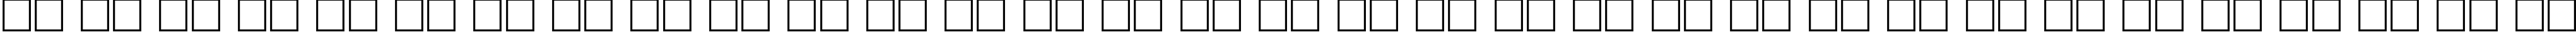 Пример написания русского алфавита шрифтом CourierCTT_55